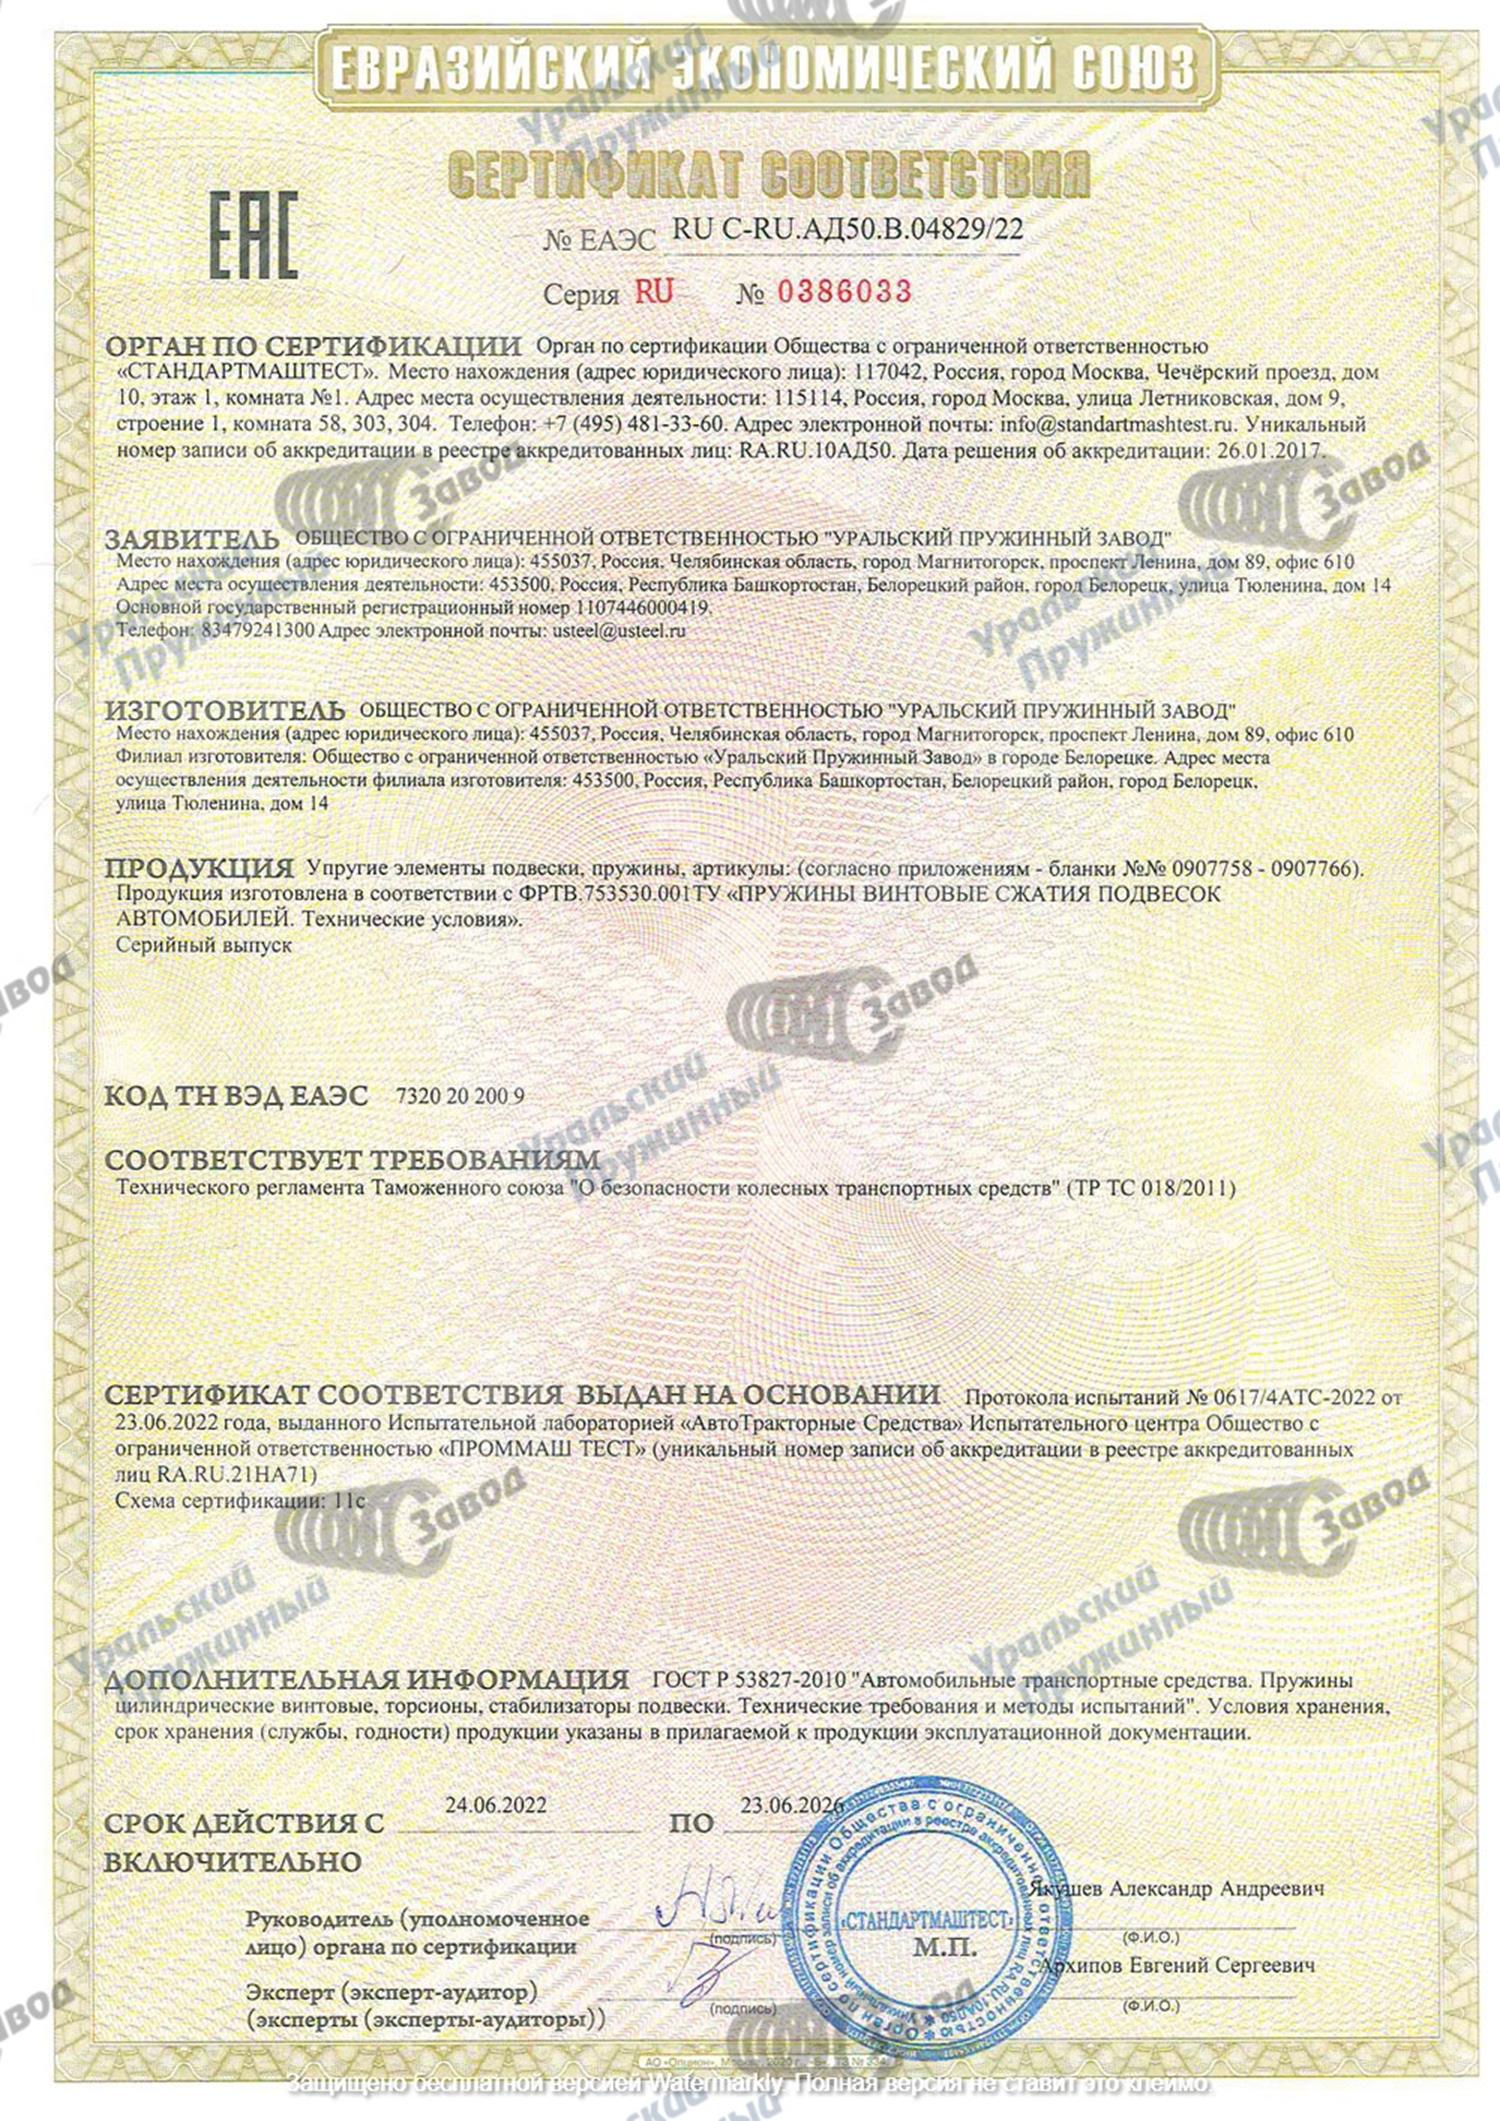 сертификат соответствия техническому регламенту Таможенного союза